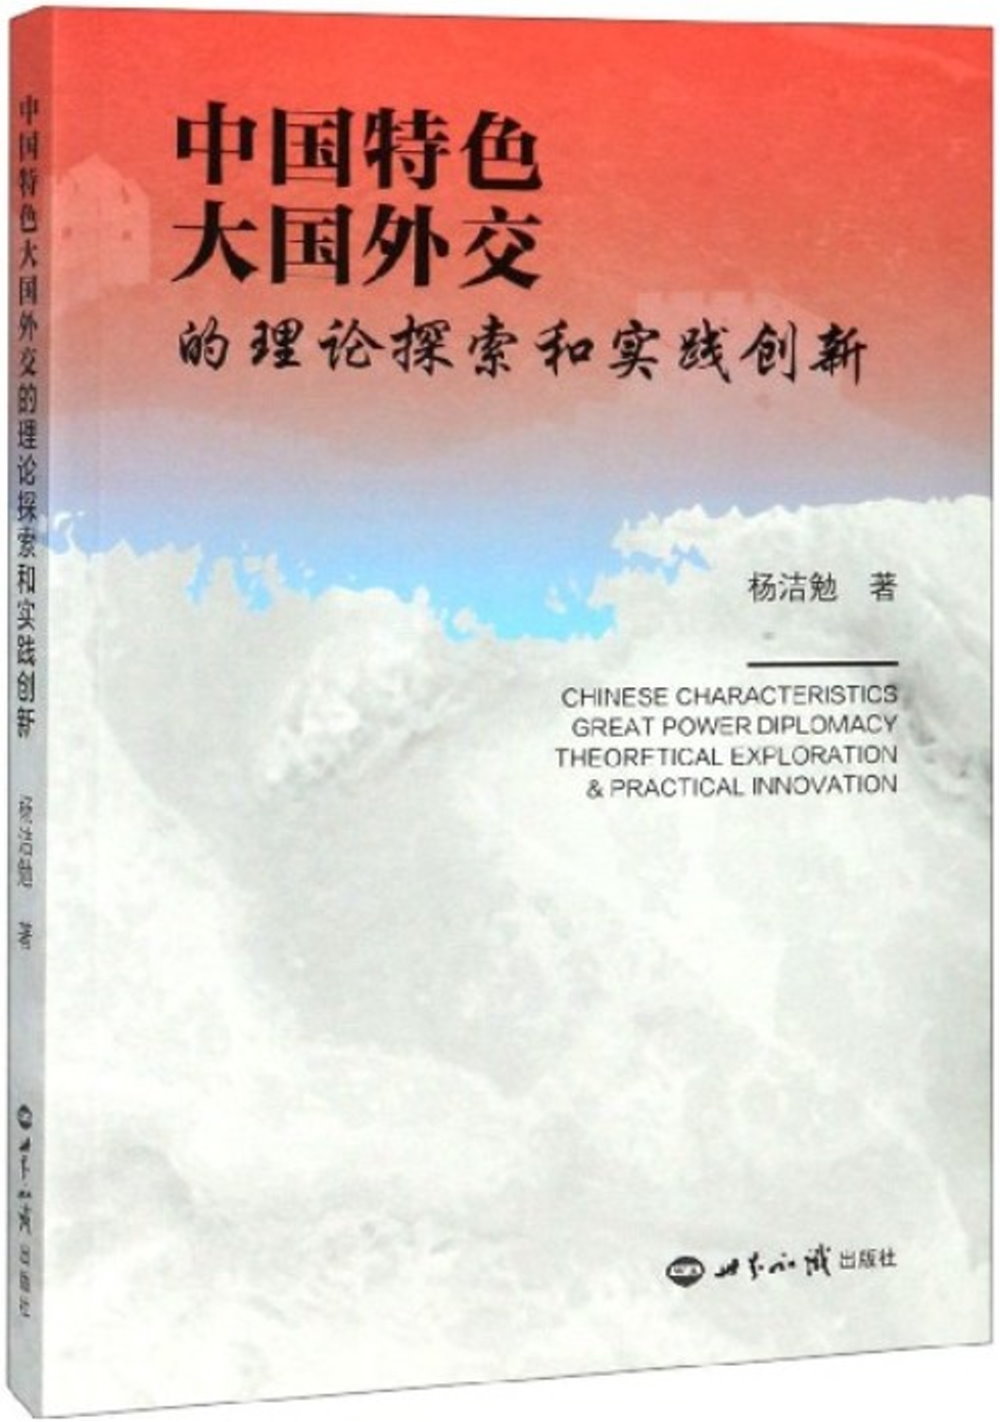 中國特色大國外交的理論探索和實踐創新